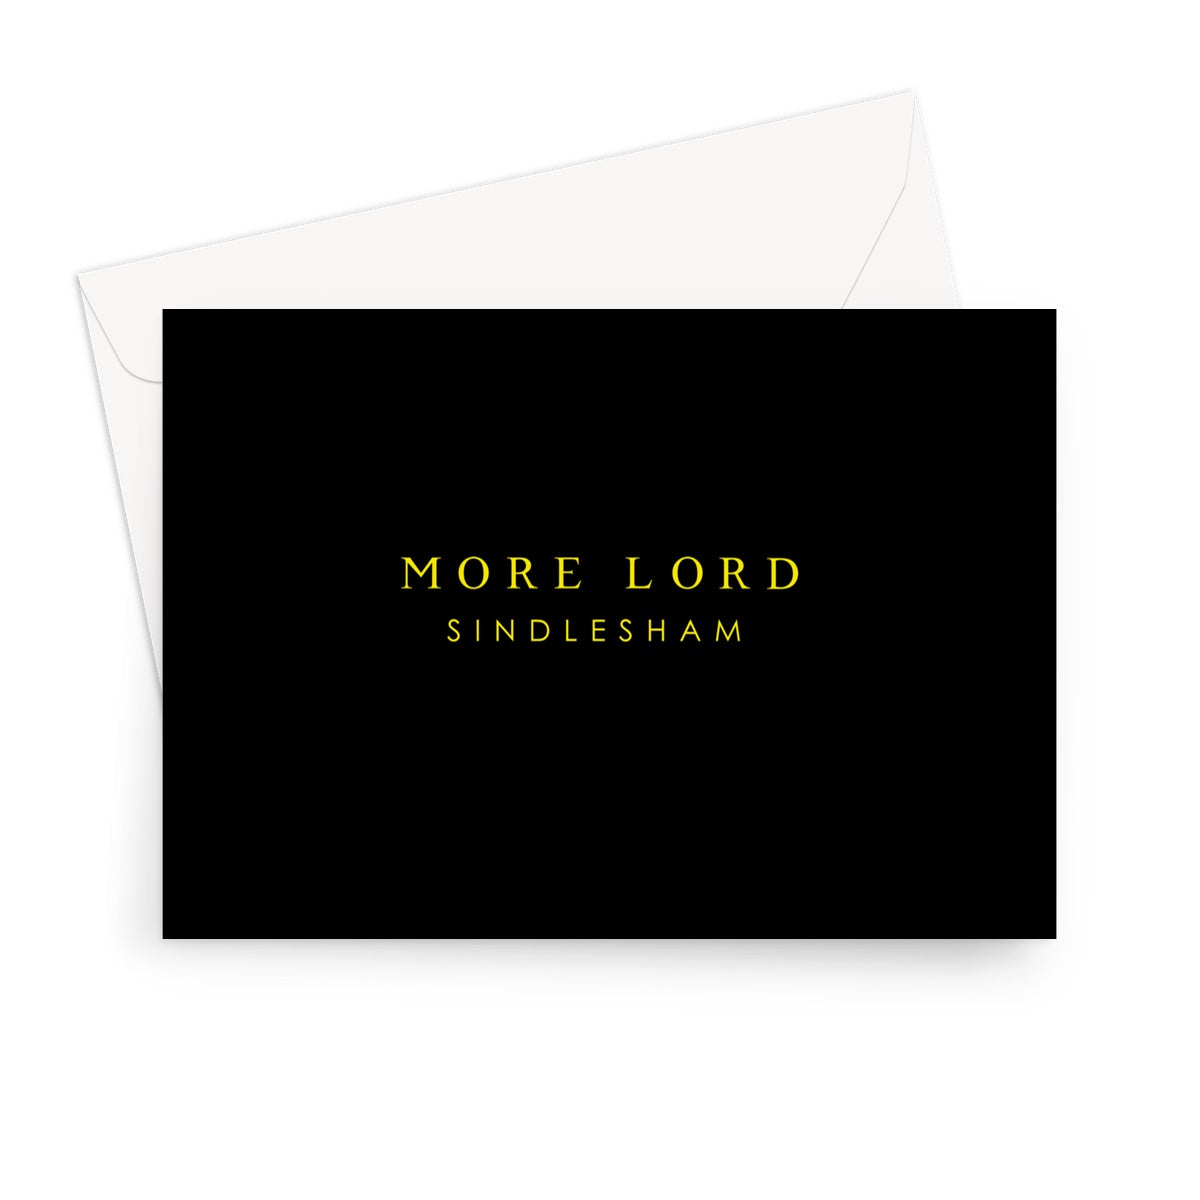 More Lord Sindlesham Greeting Card